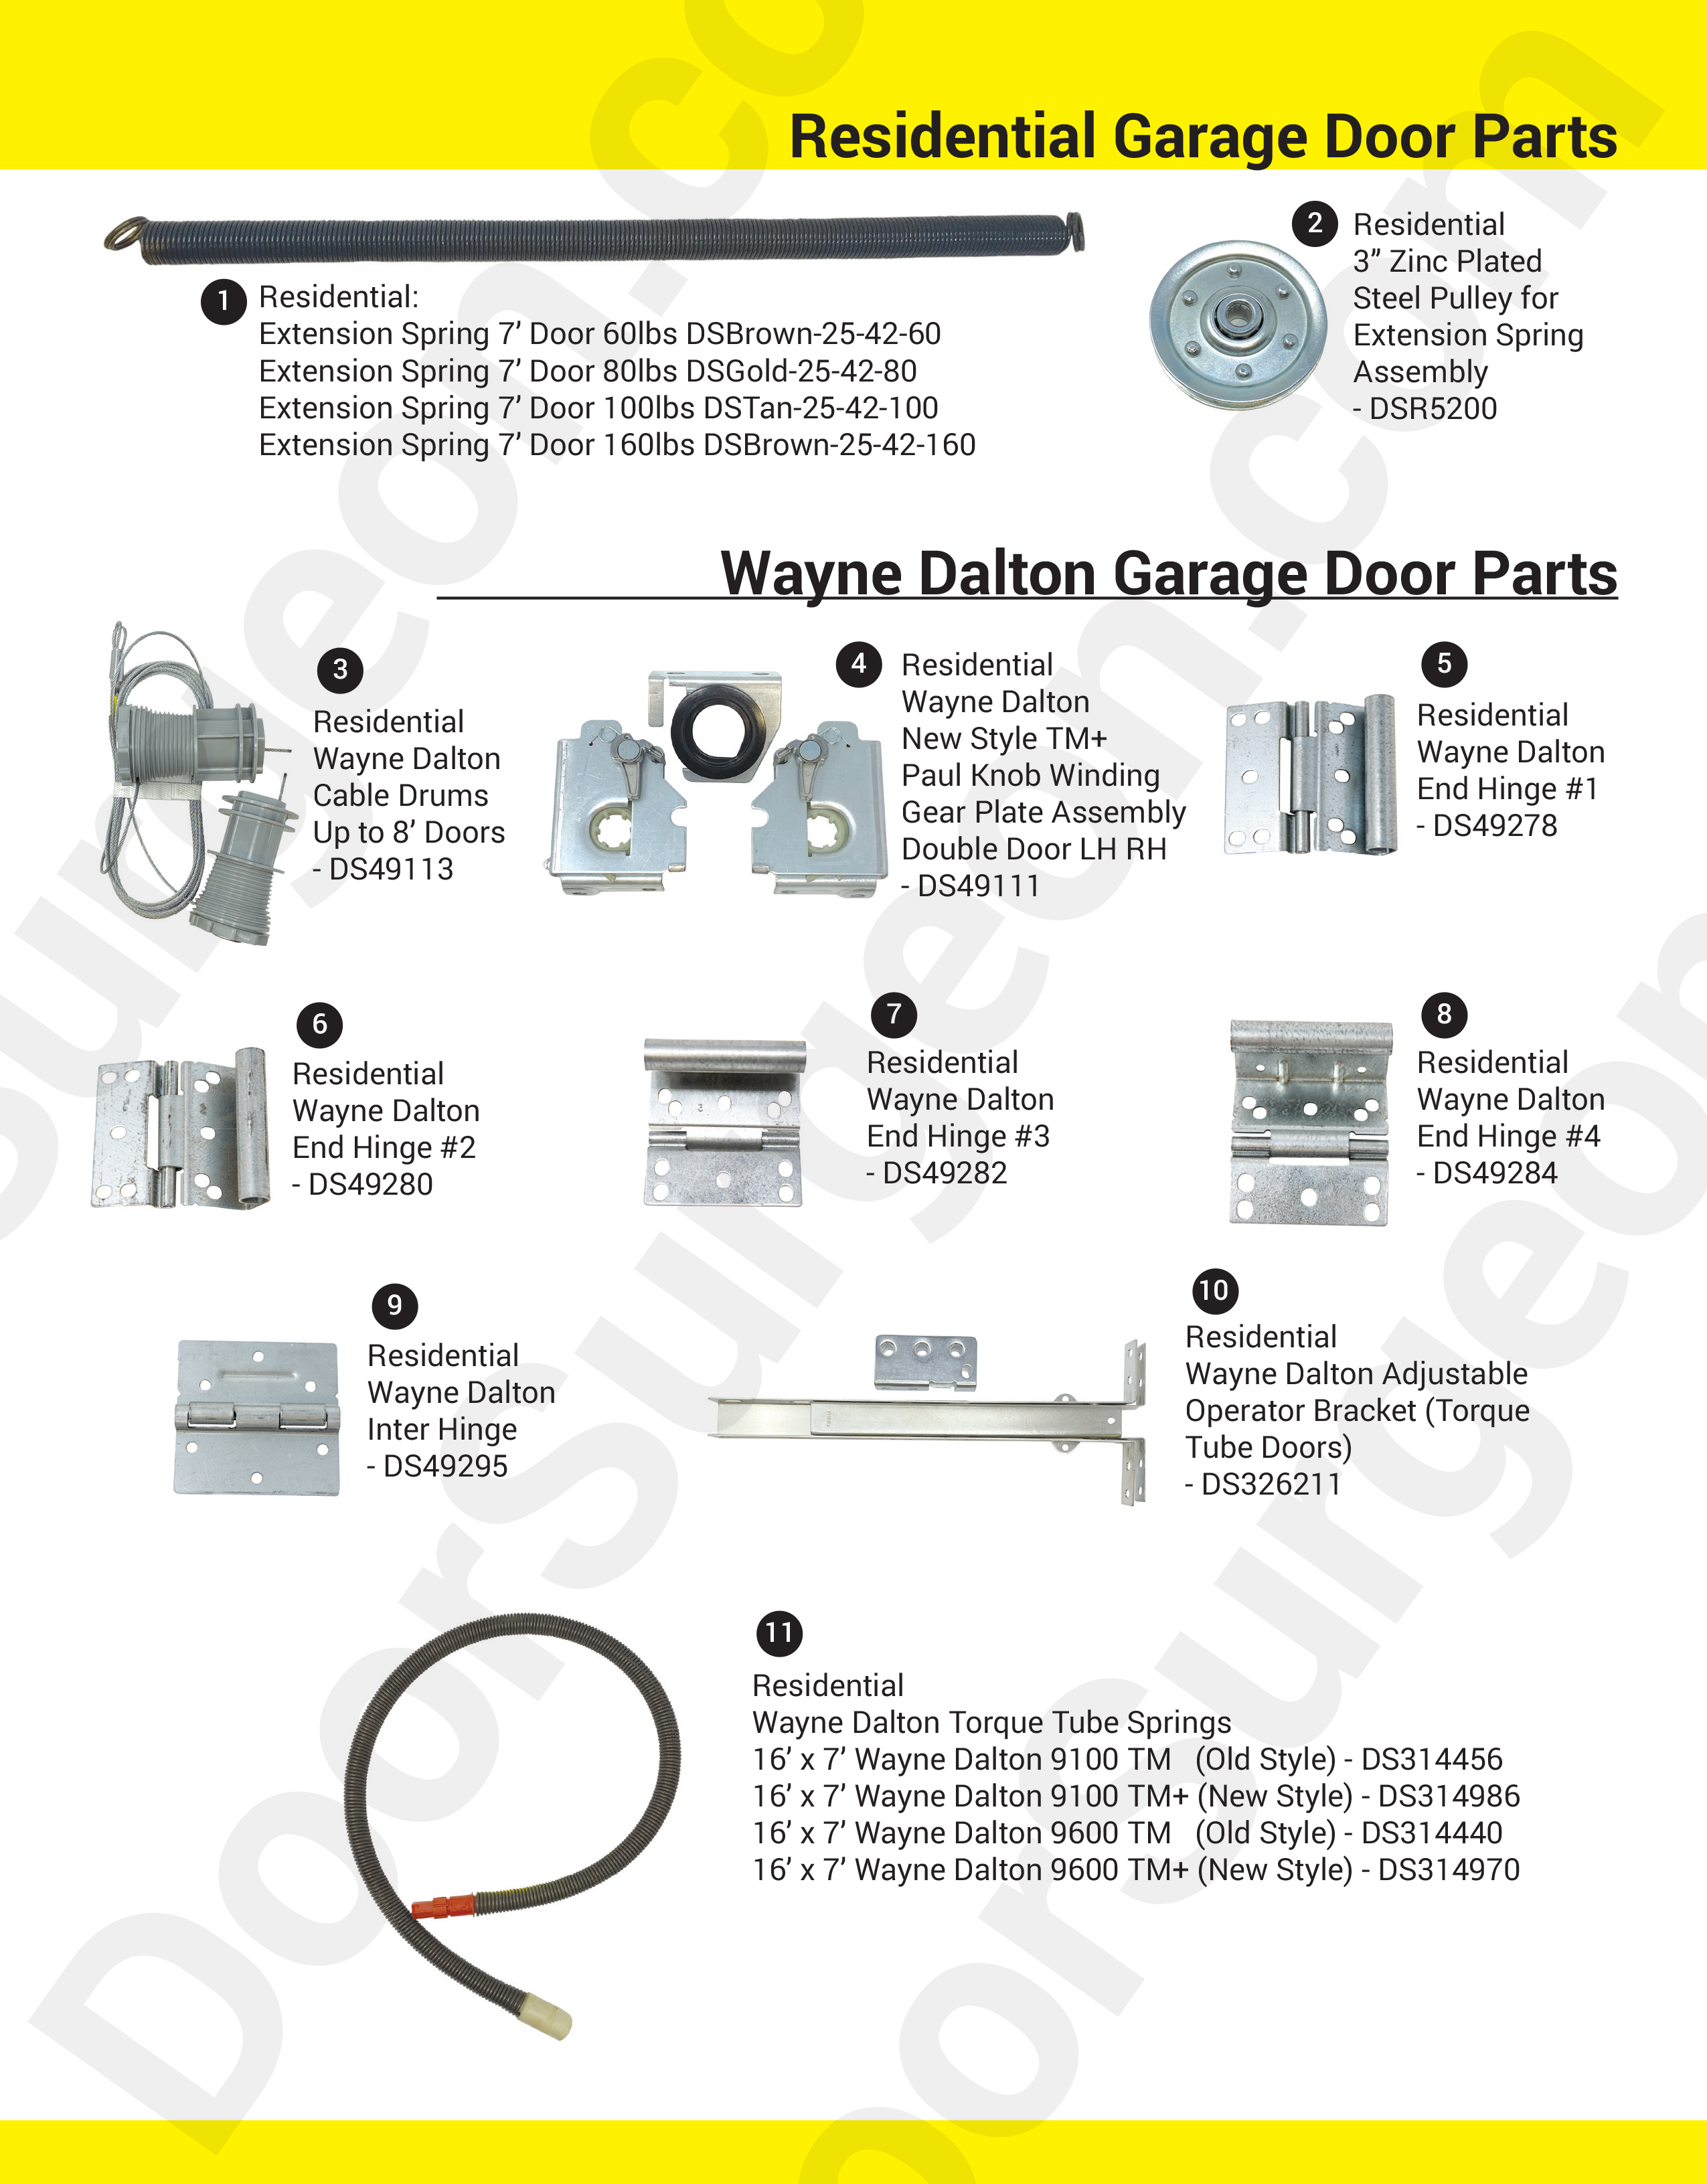 Door Surgeon replacement parts for residential garage doors Devon.